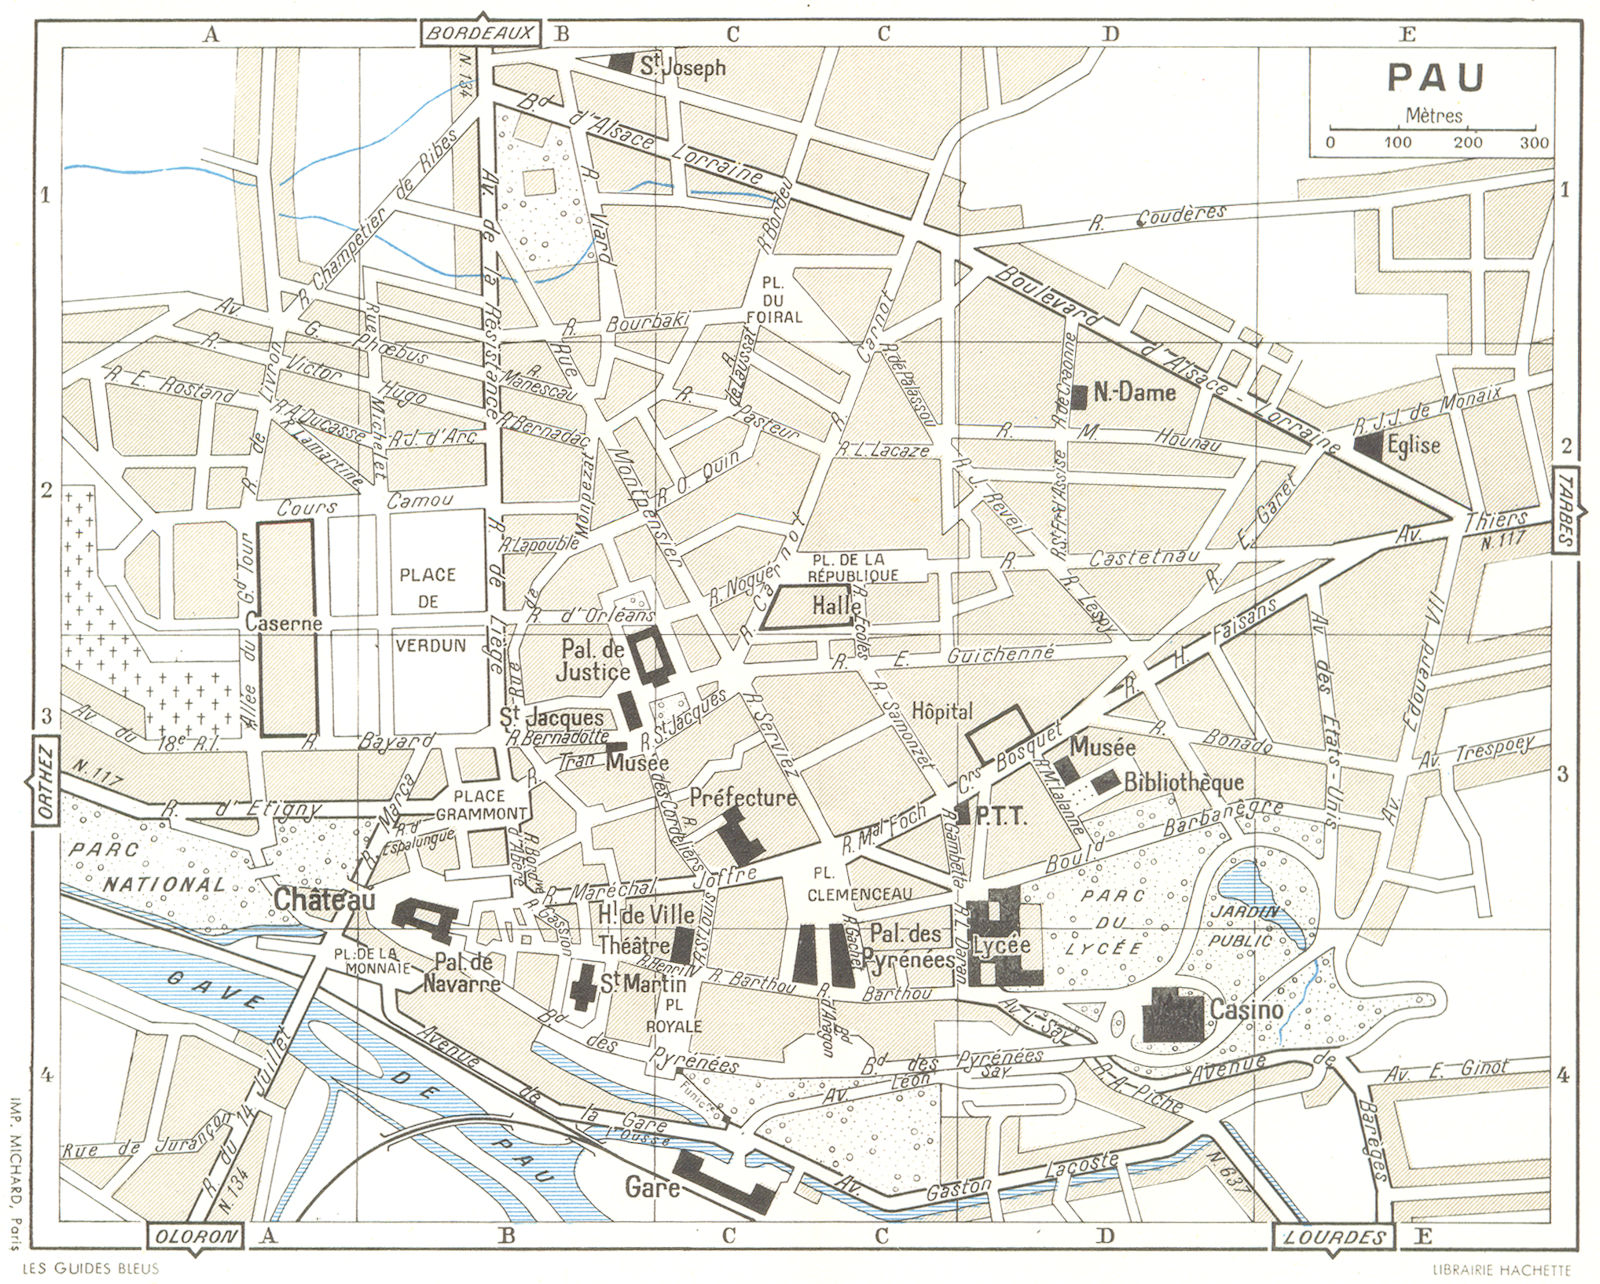 PYRÉNÉES-ATLANTIQUES. Pau 1959 old vintage map plan chart